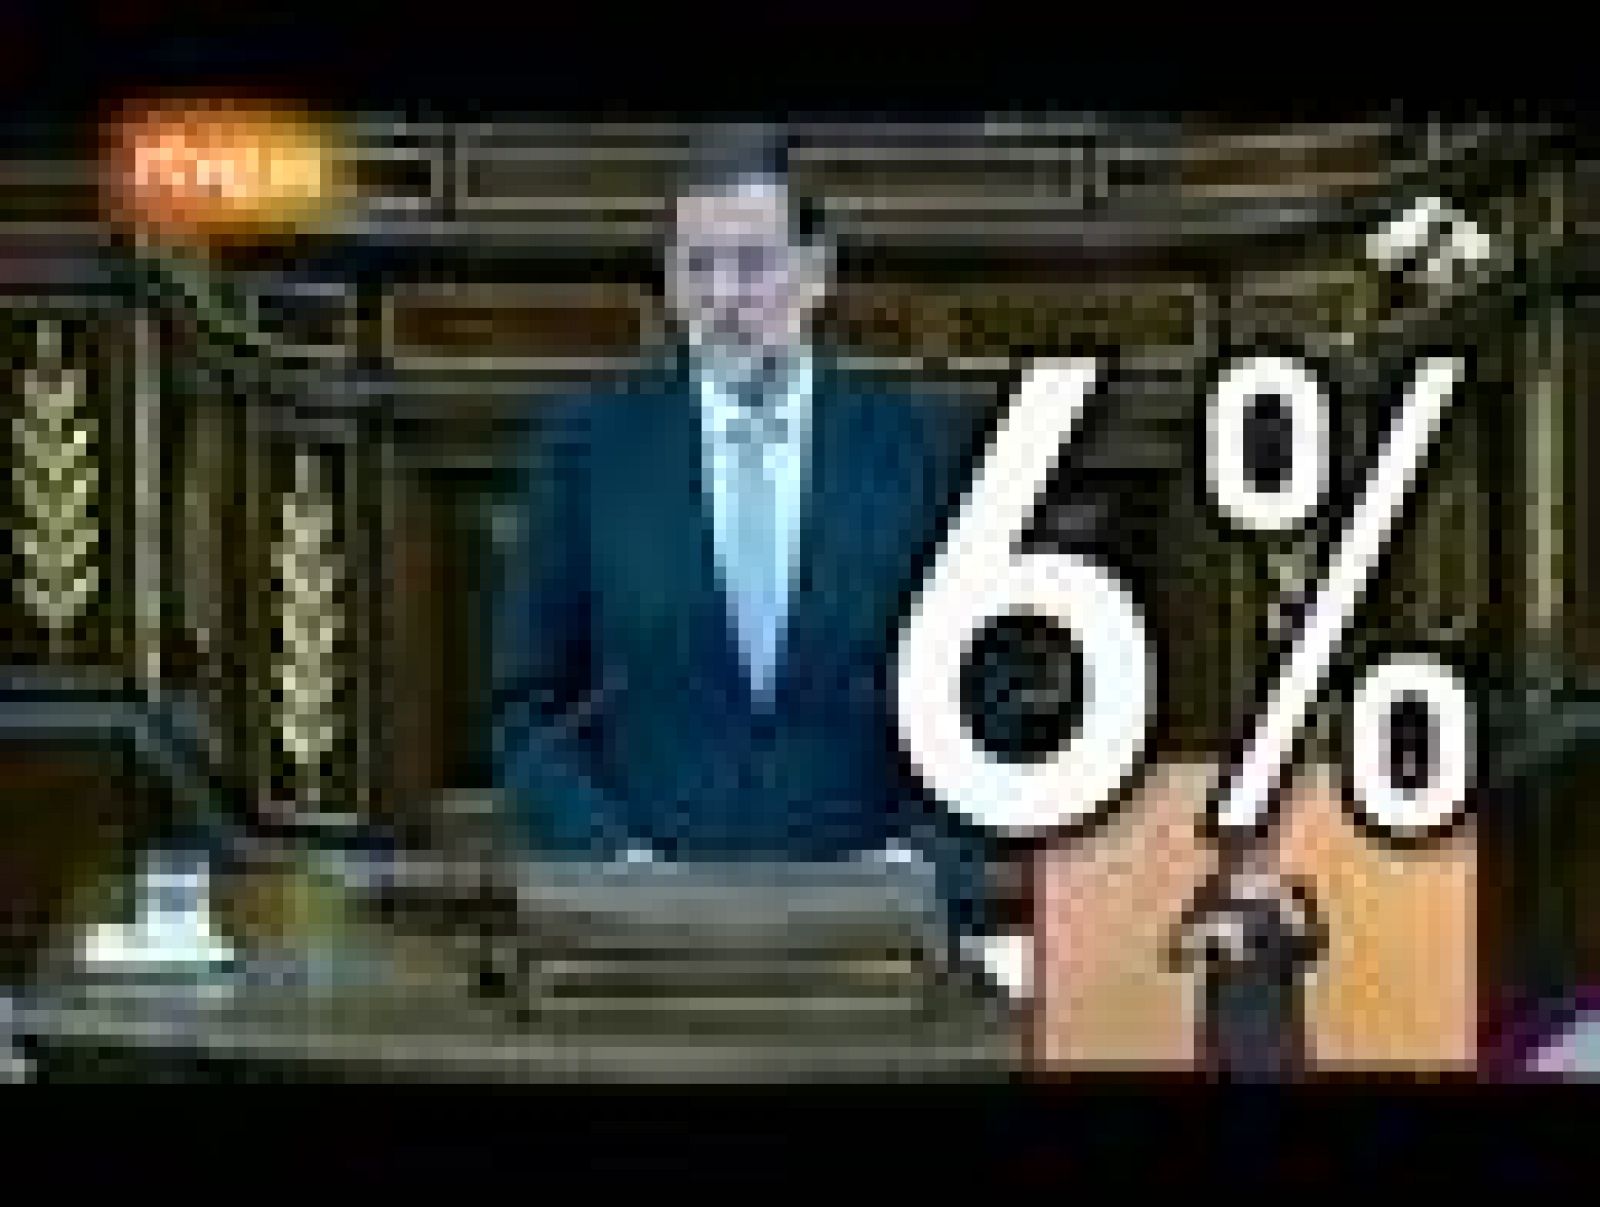 El PP responde al vídeo del PSOE con otro sobre el déficit: "Donde dije 6, digo 8"